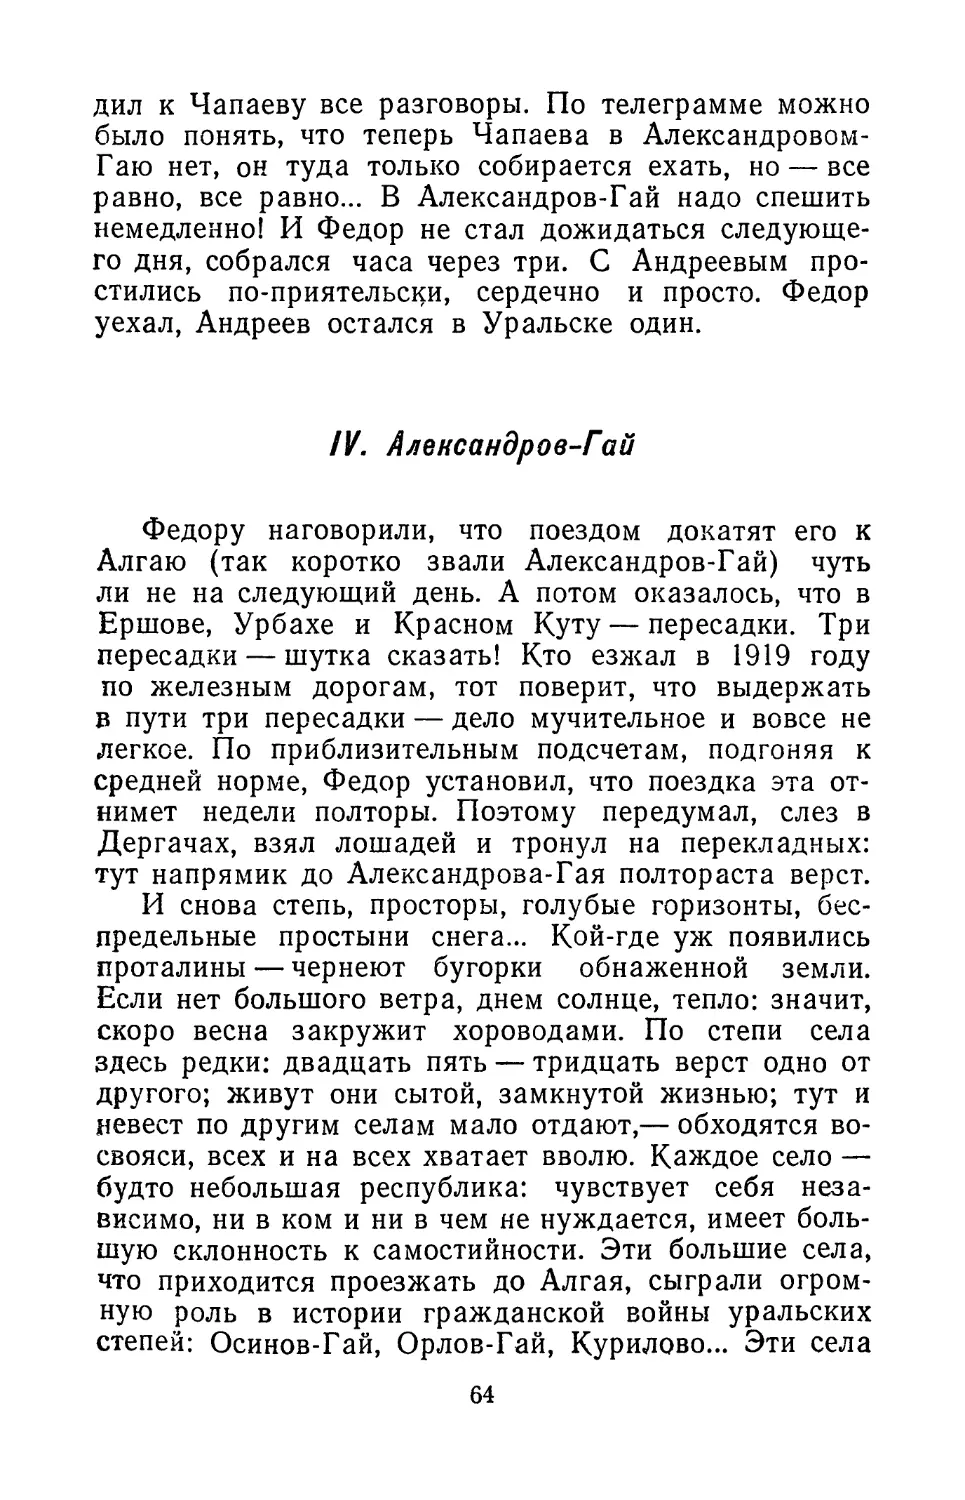 IV. Александров-Гай